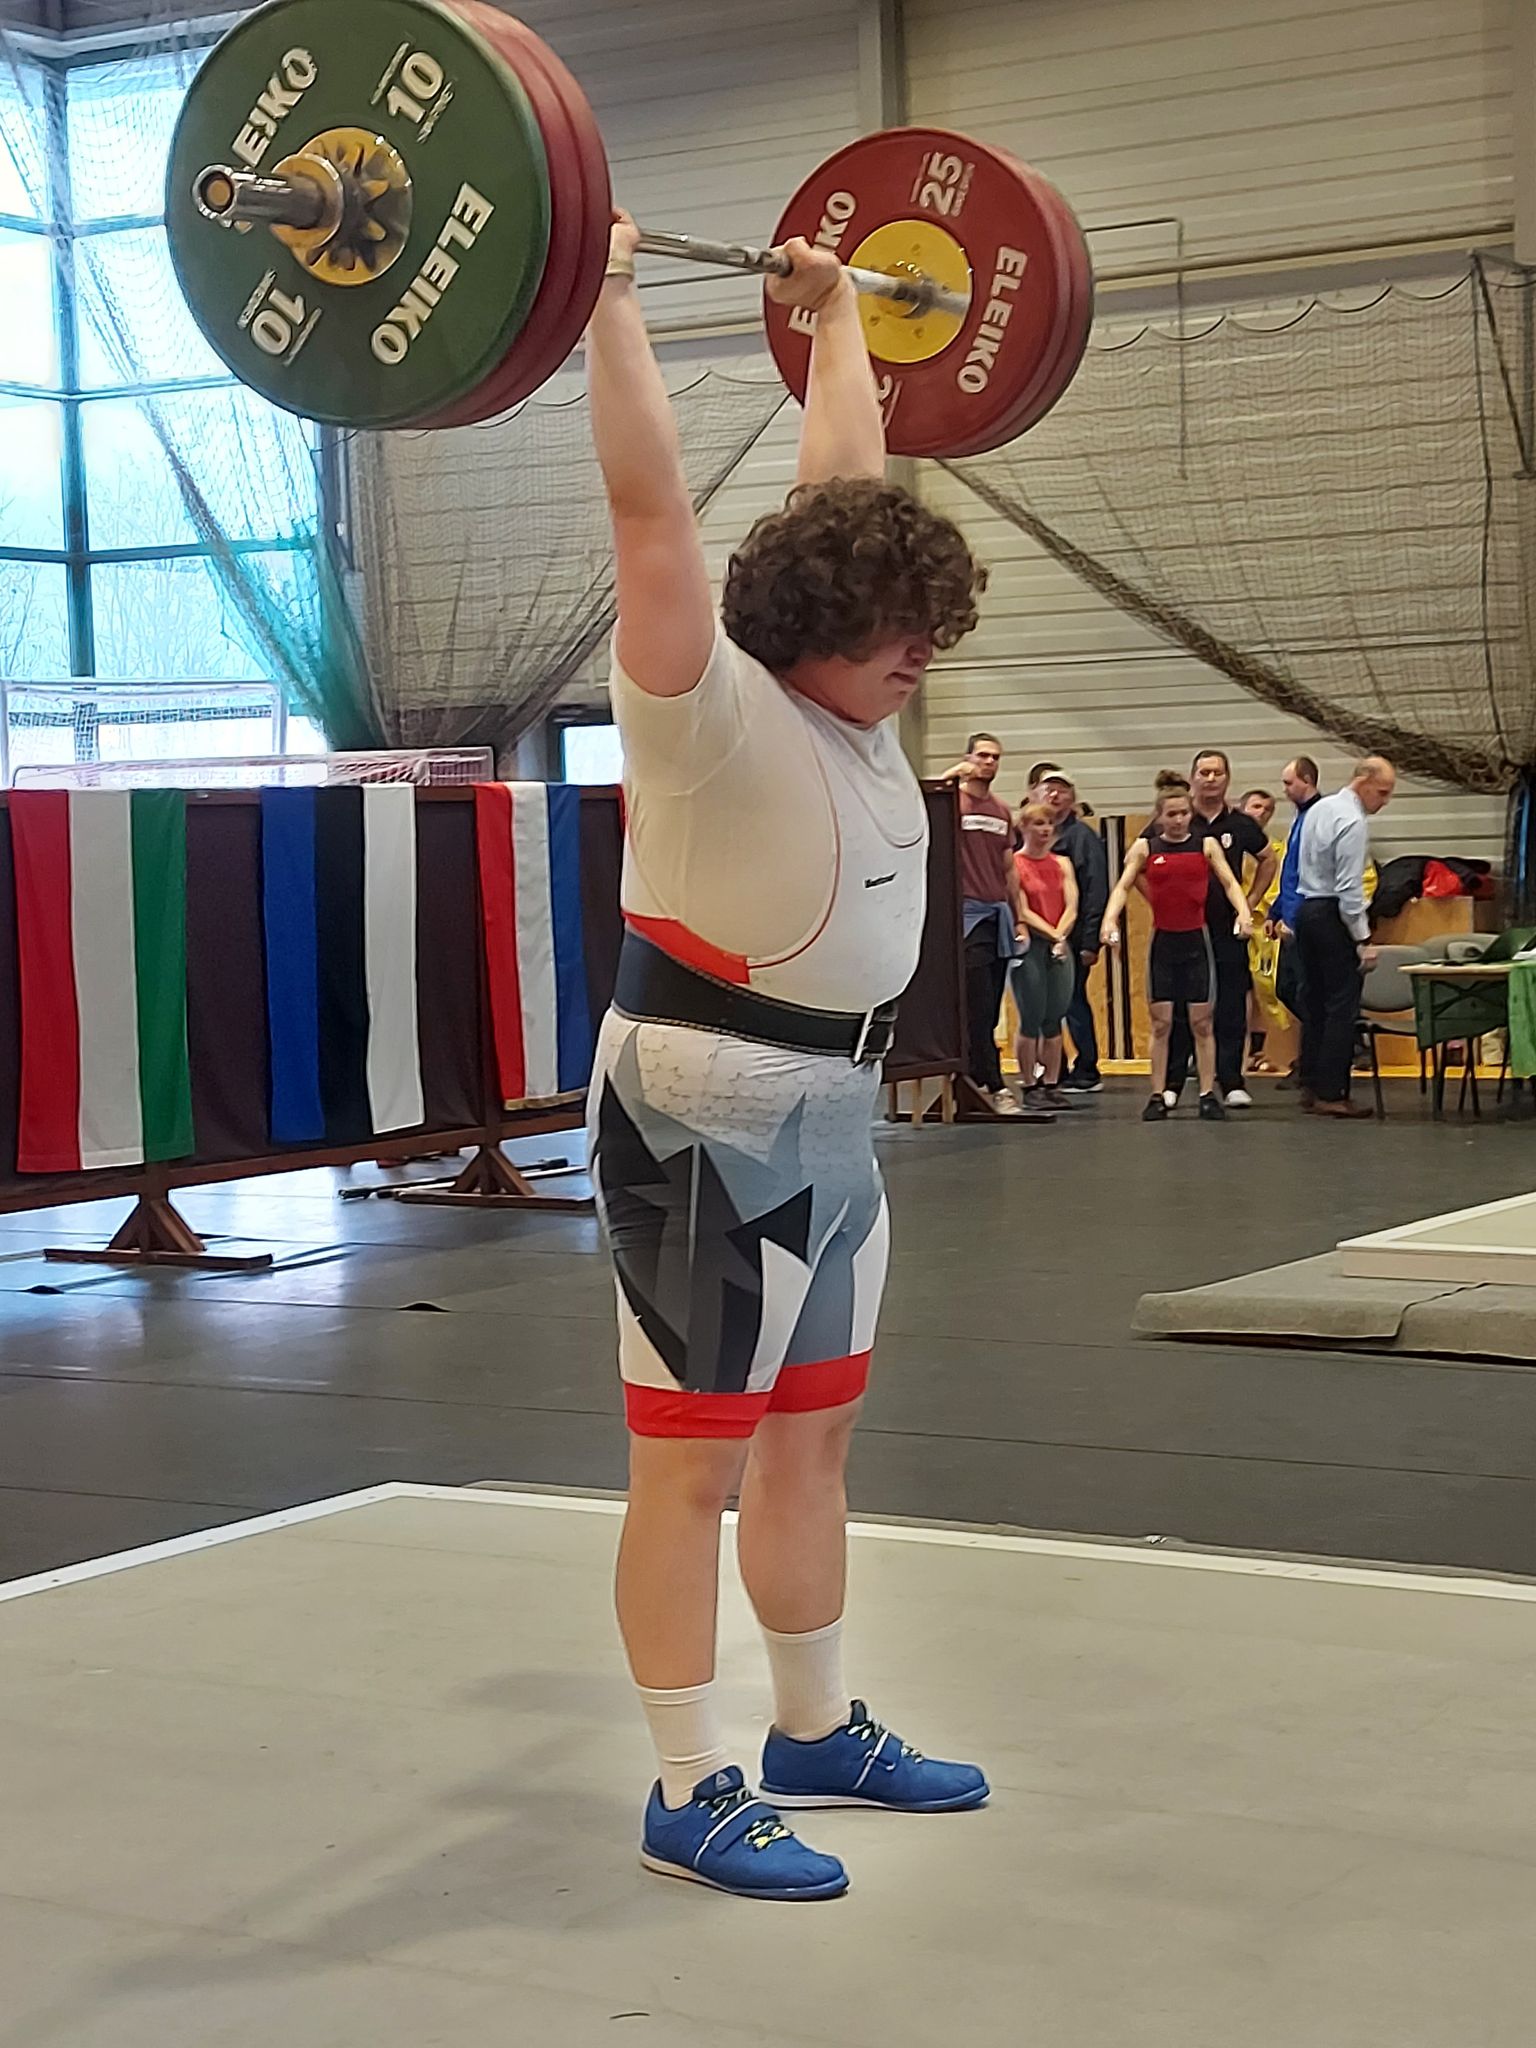 SK Vargamäe tõstjad võistlesid Budapestis. Roomet Väli tõukas 145 kg.